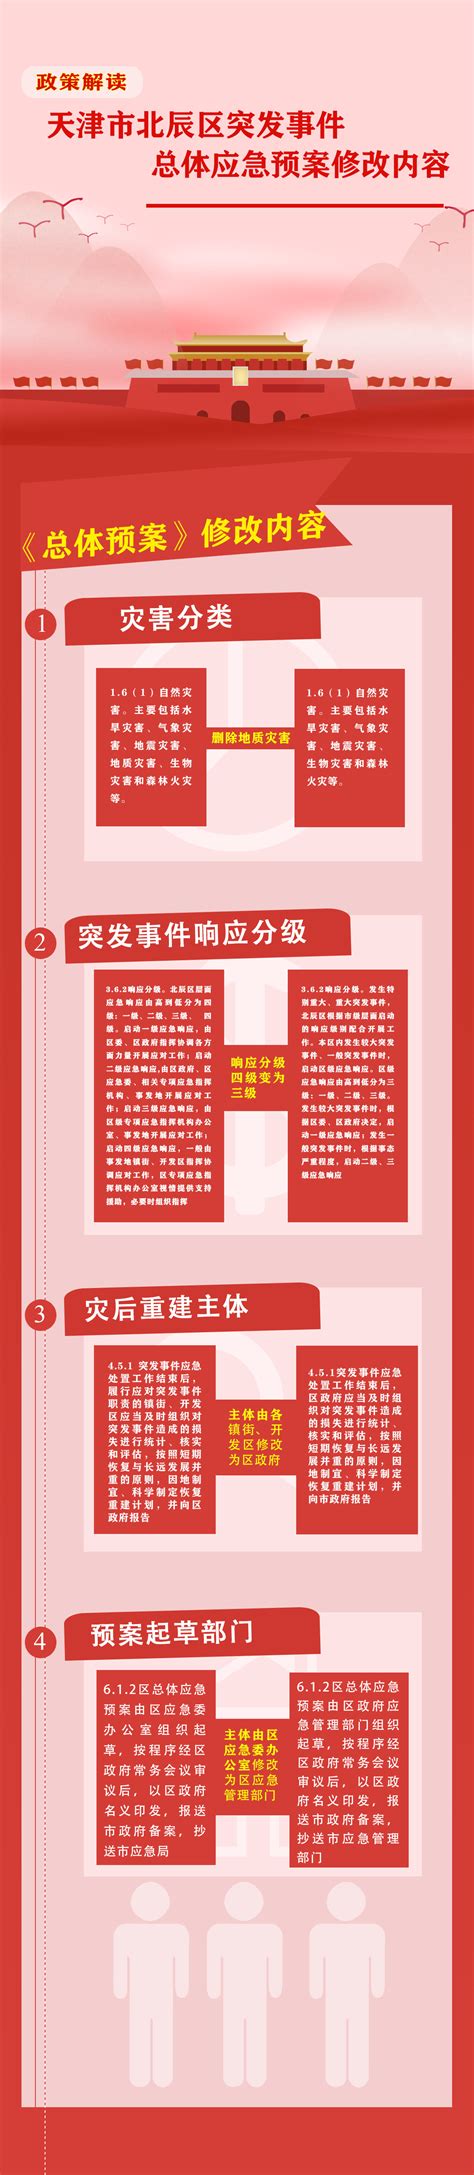 津政发[2019]18号：天津市人民政府关于修改和废止部分行政规范性文件的通知